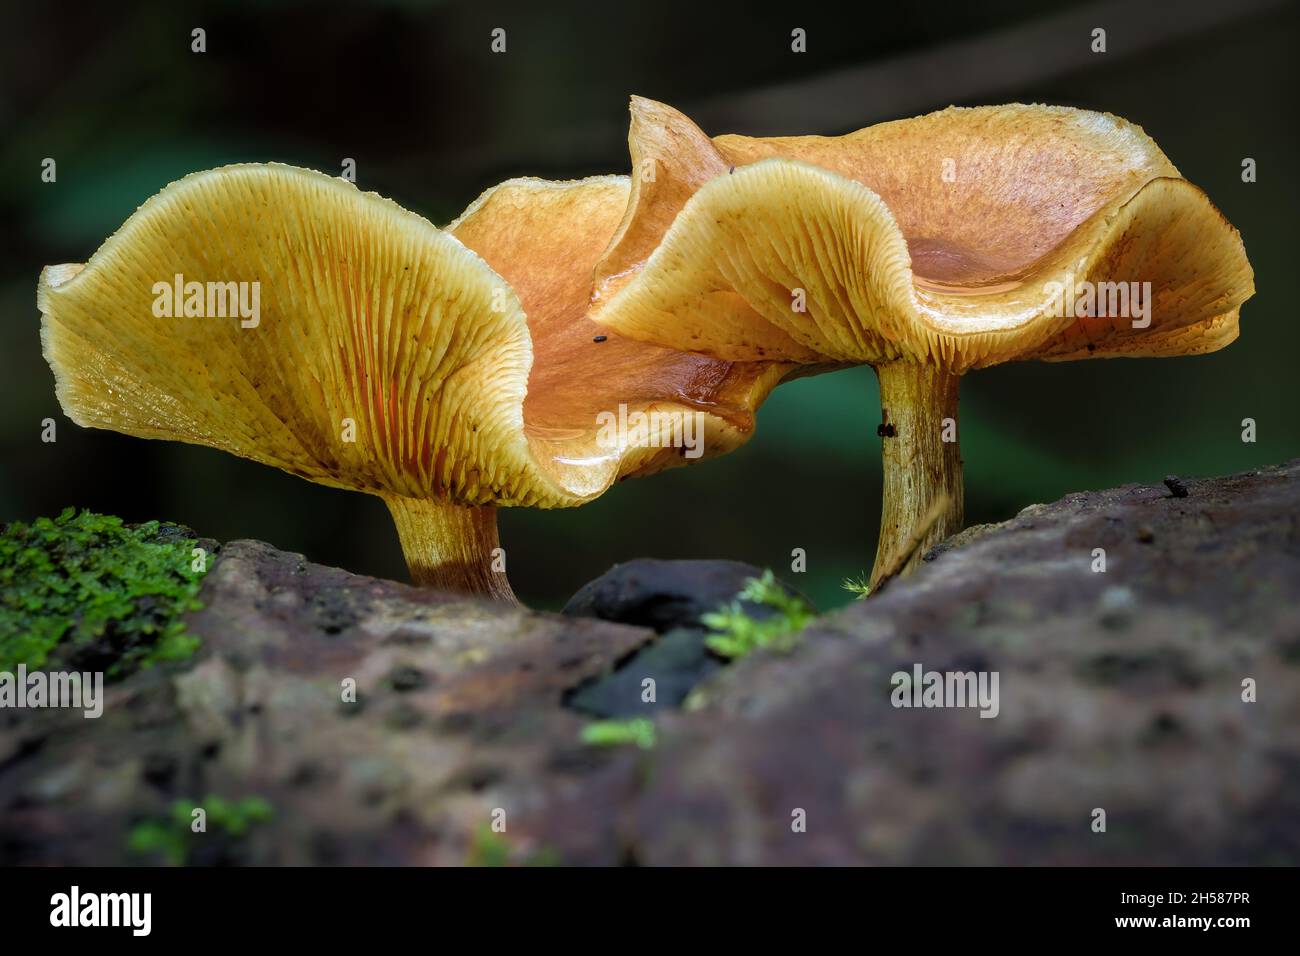 Due bellissimi funghi di grandi dimensioni marrone chiaro con cappelli arricciati su sfondo scuro autunnale Foto Stock